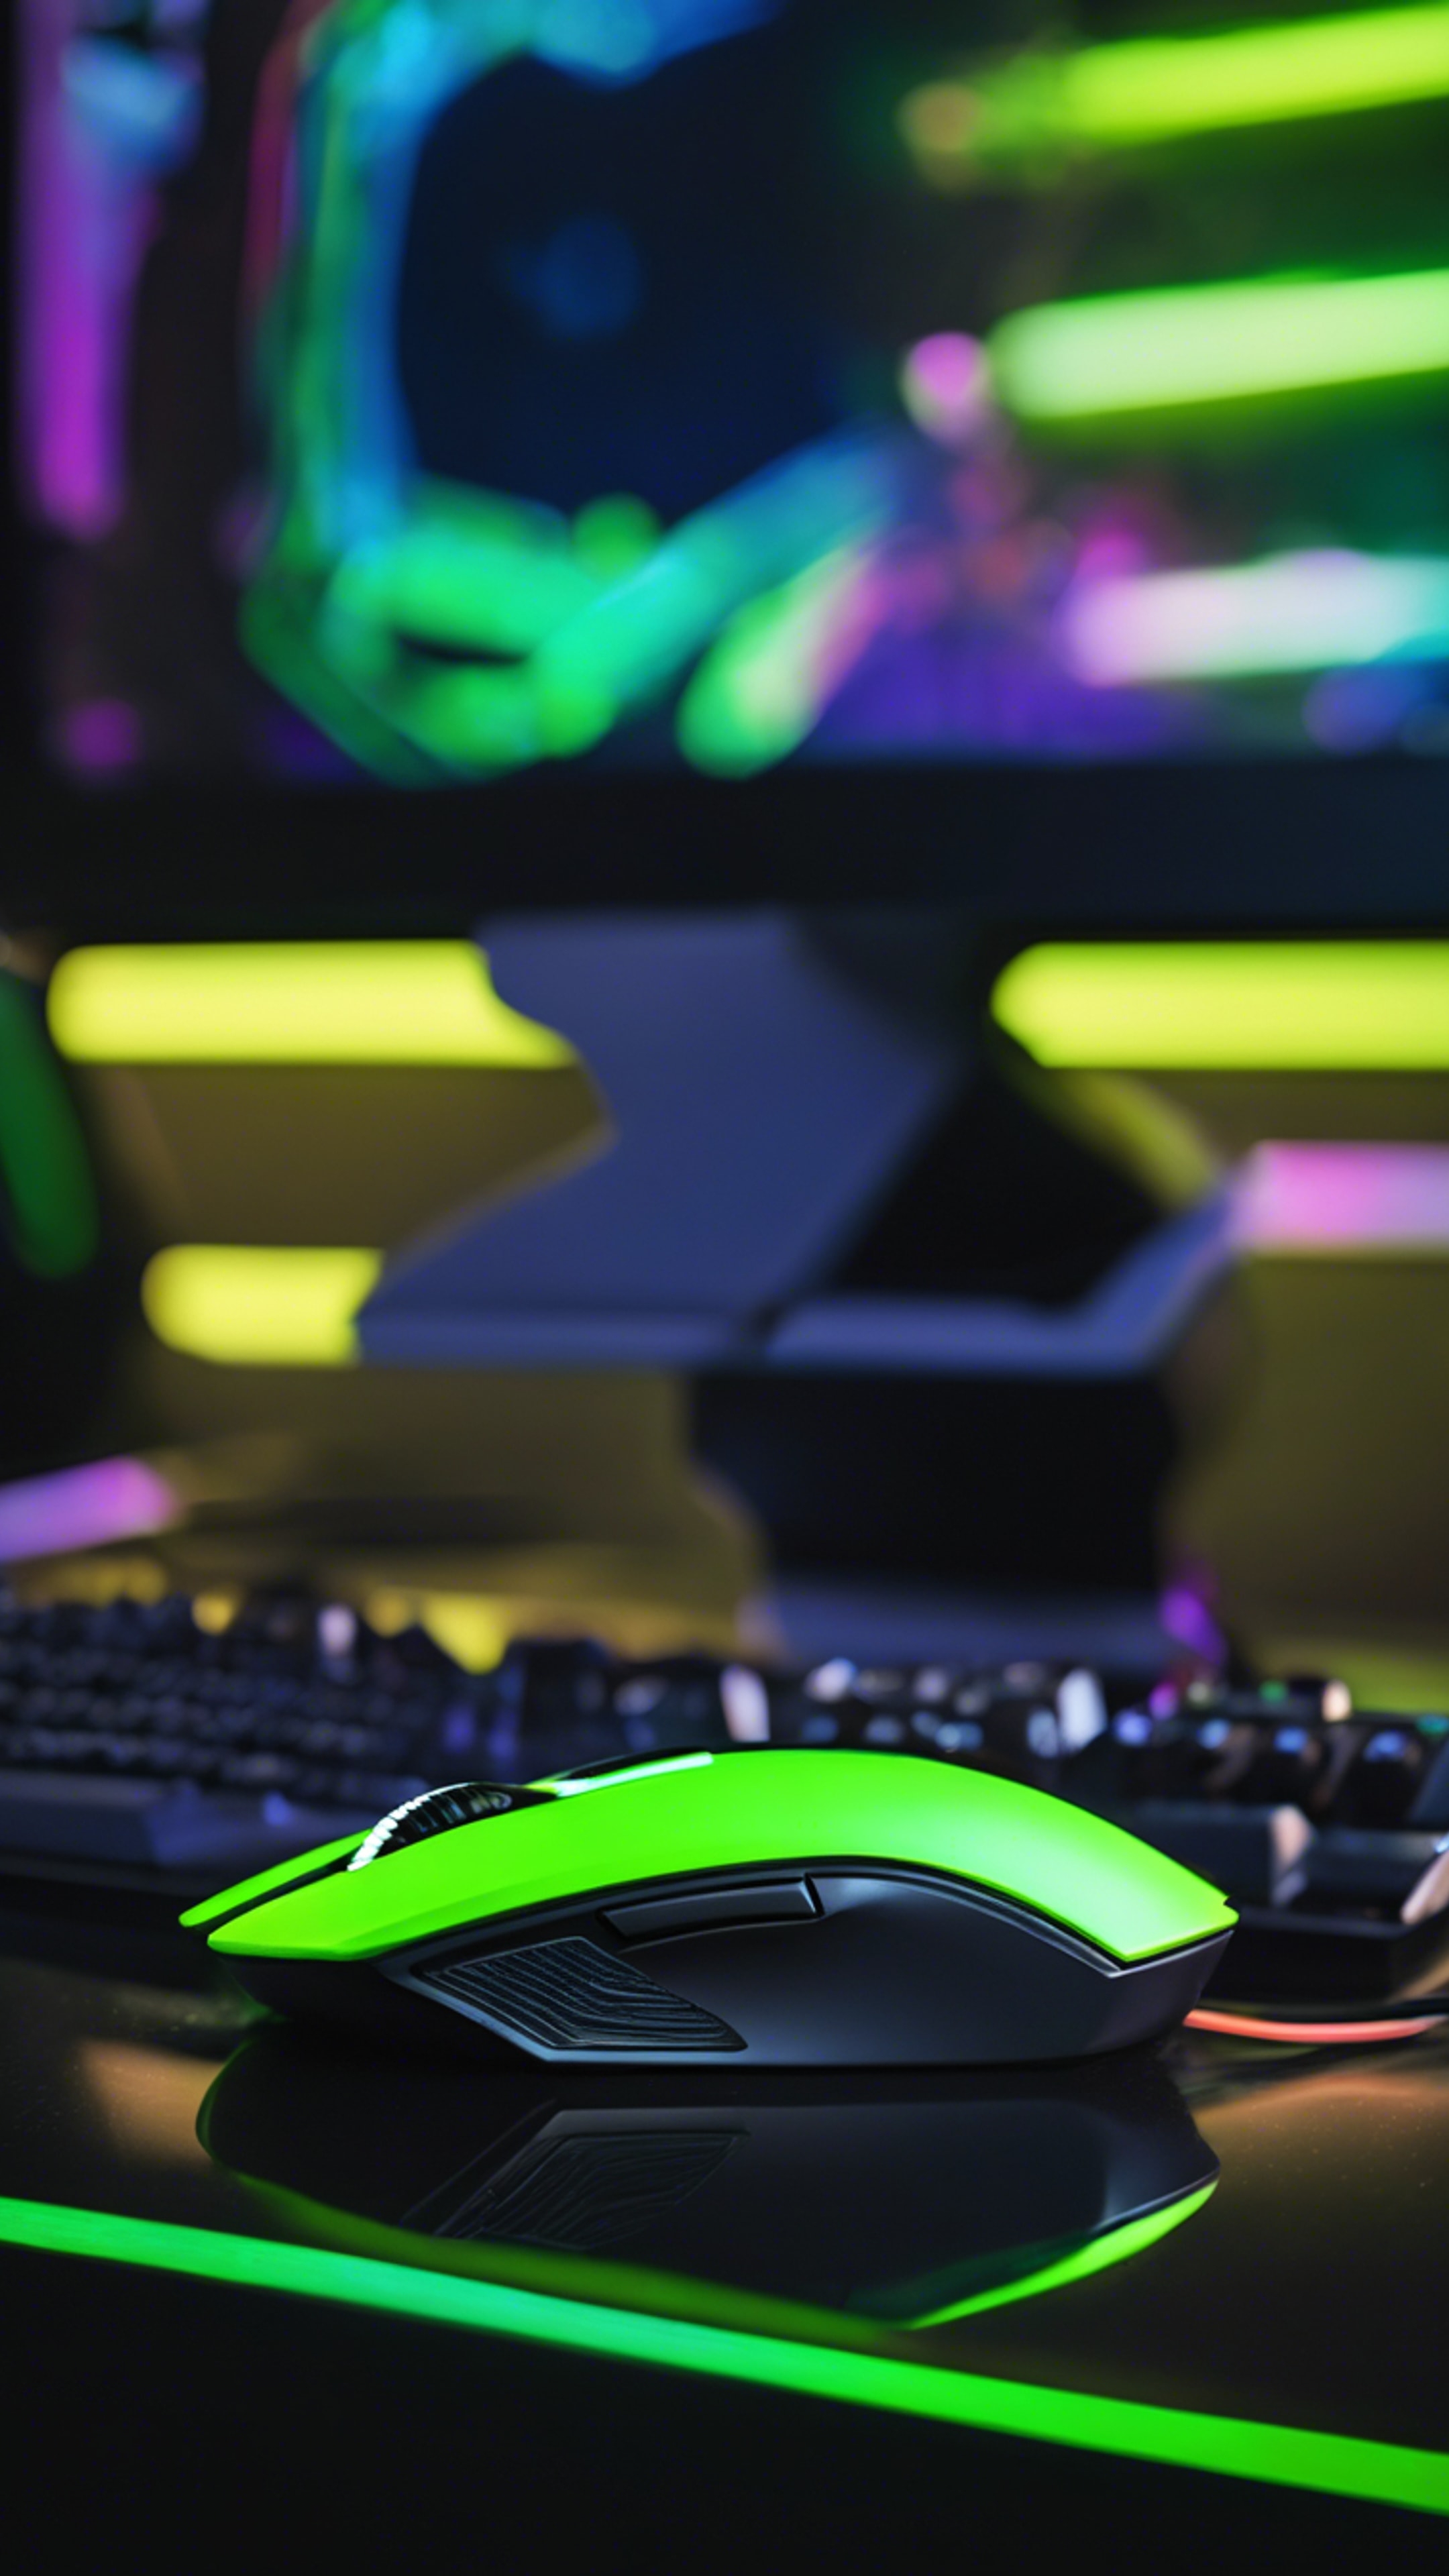 A cool neon green high-tech gaming mouse on a futuristic black desk setup. Hình nền[6d2a2b9049aa4c81a995]